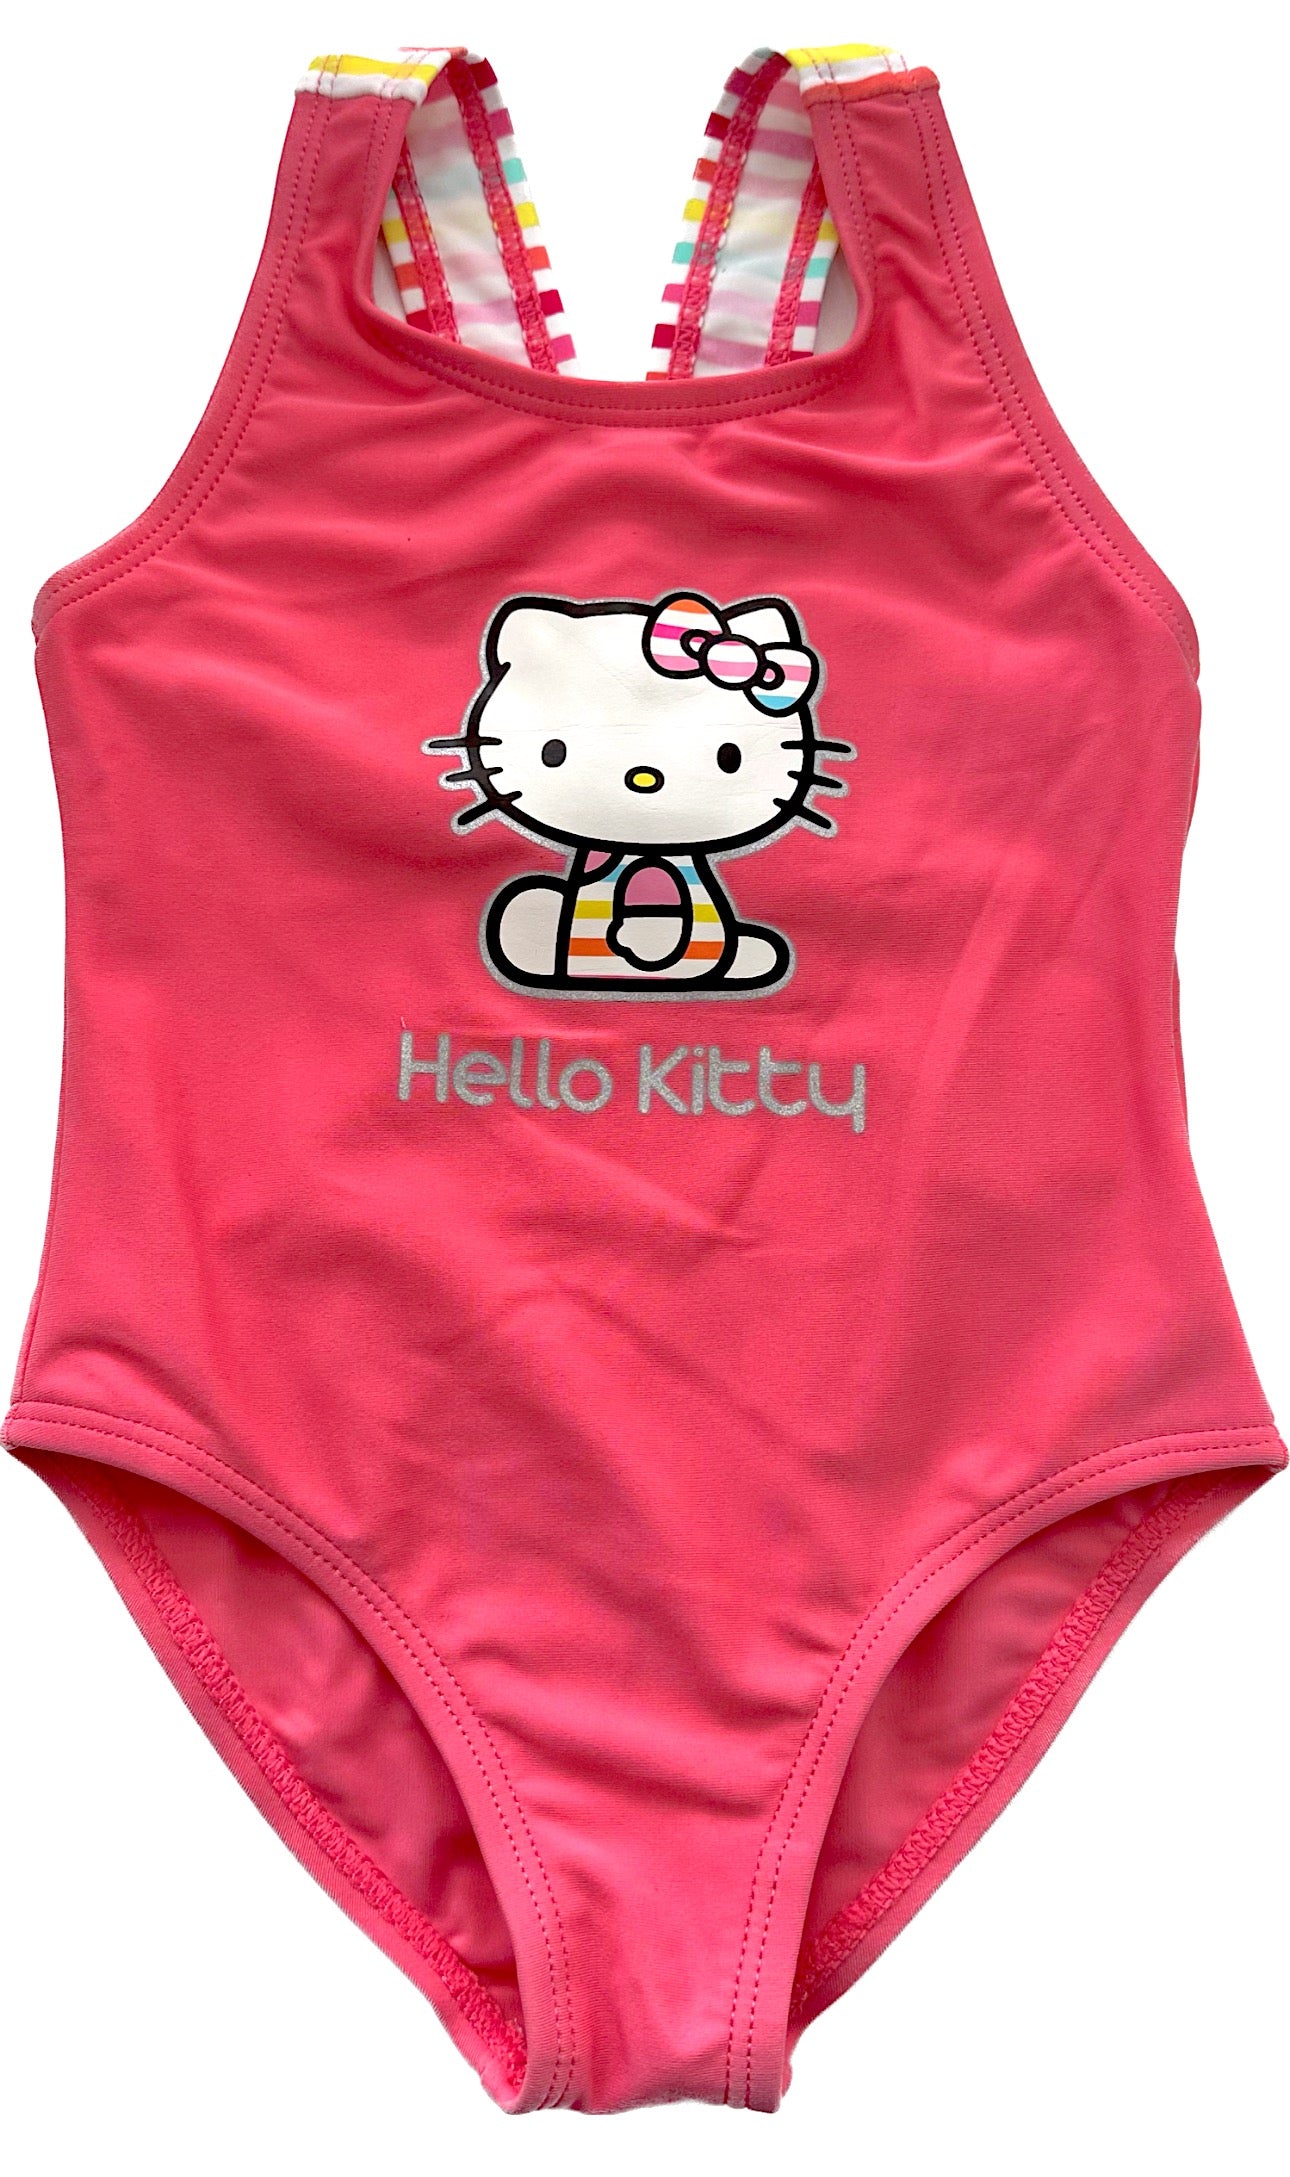 Hello Kitty Baby Swimwear